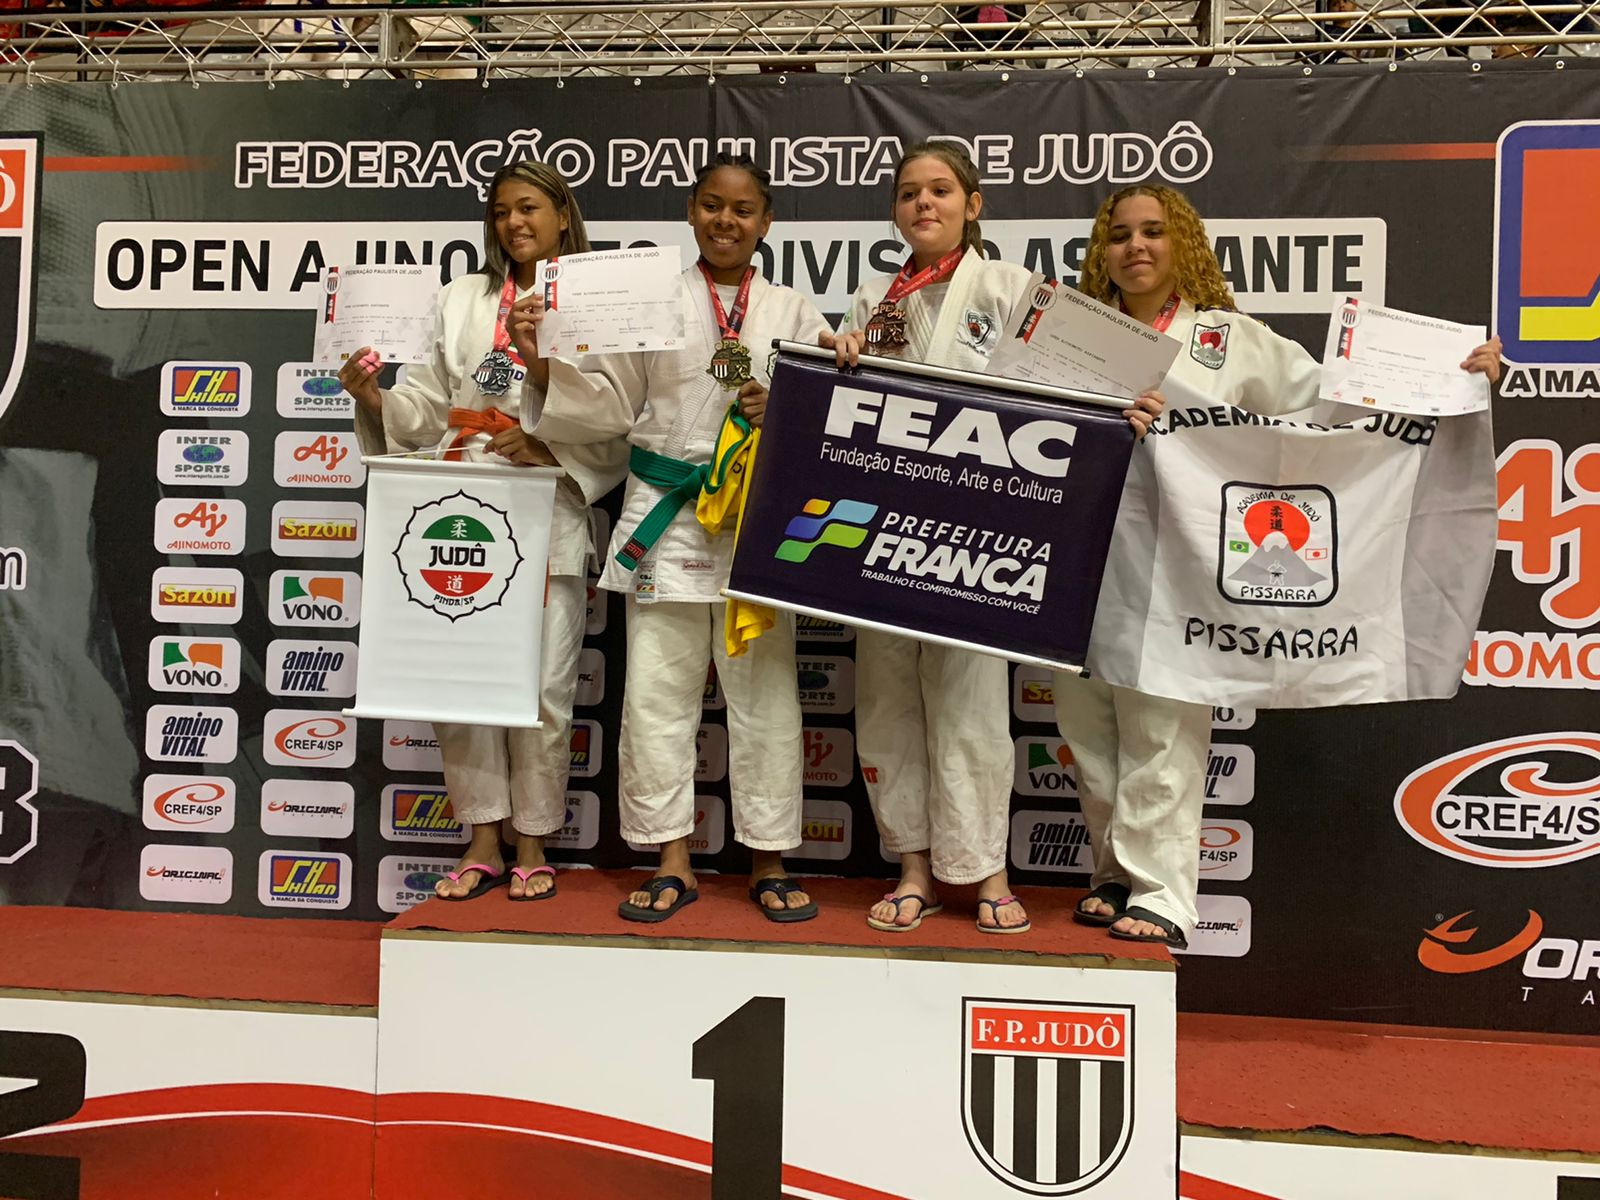 Judocas de Bertioga conquistam medalhas no Open Ajinomoto